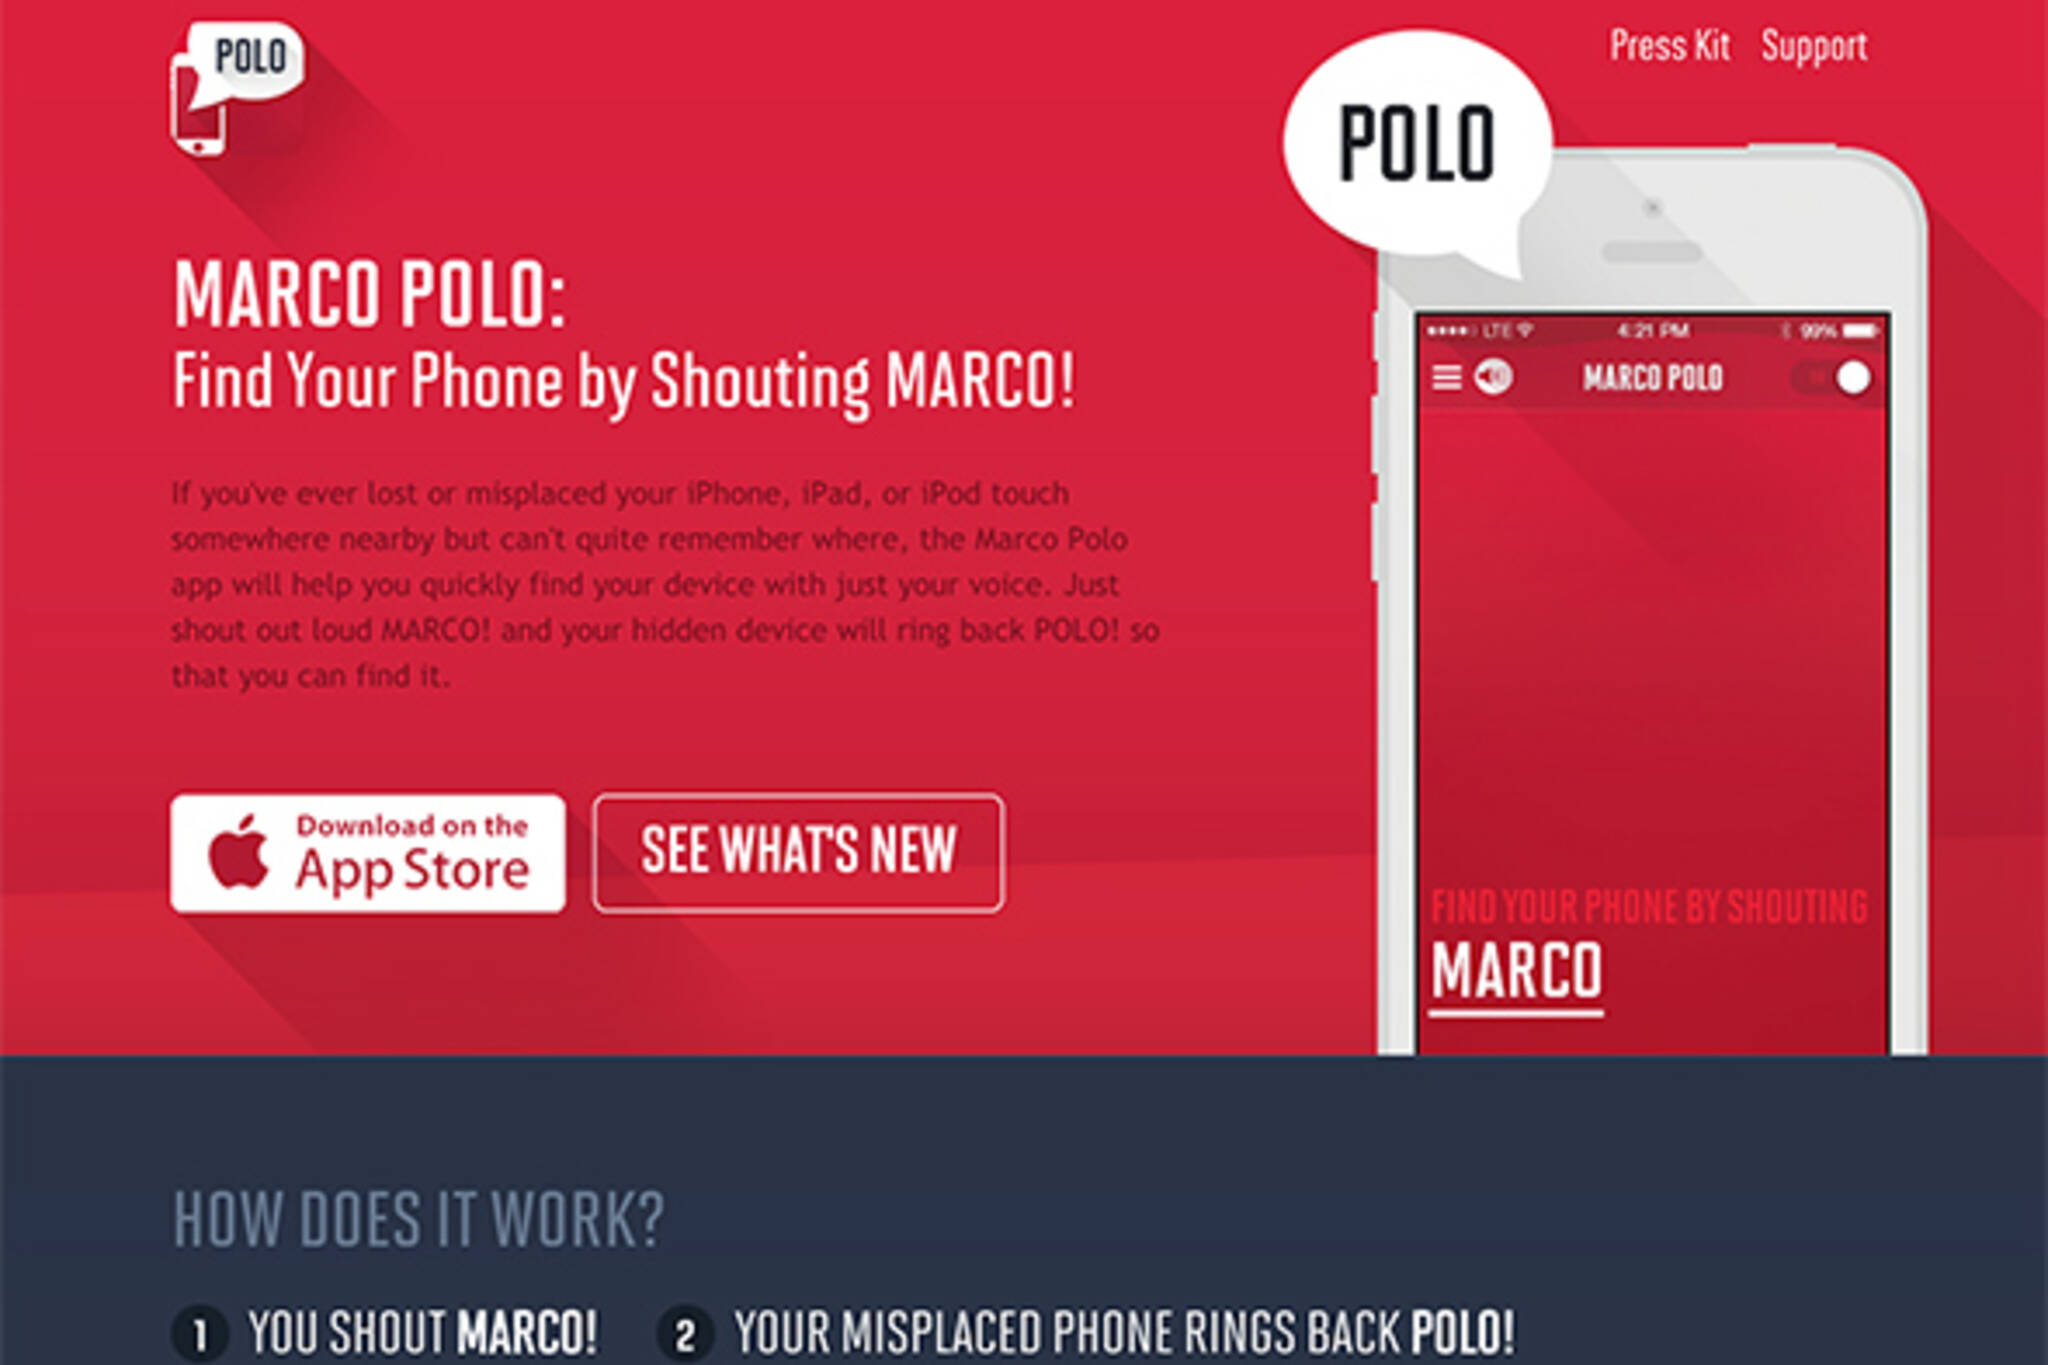 Marco Polo app